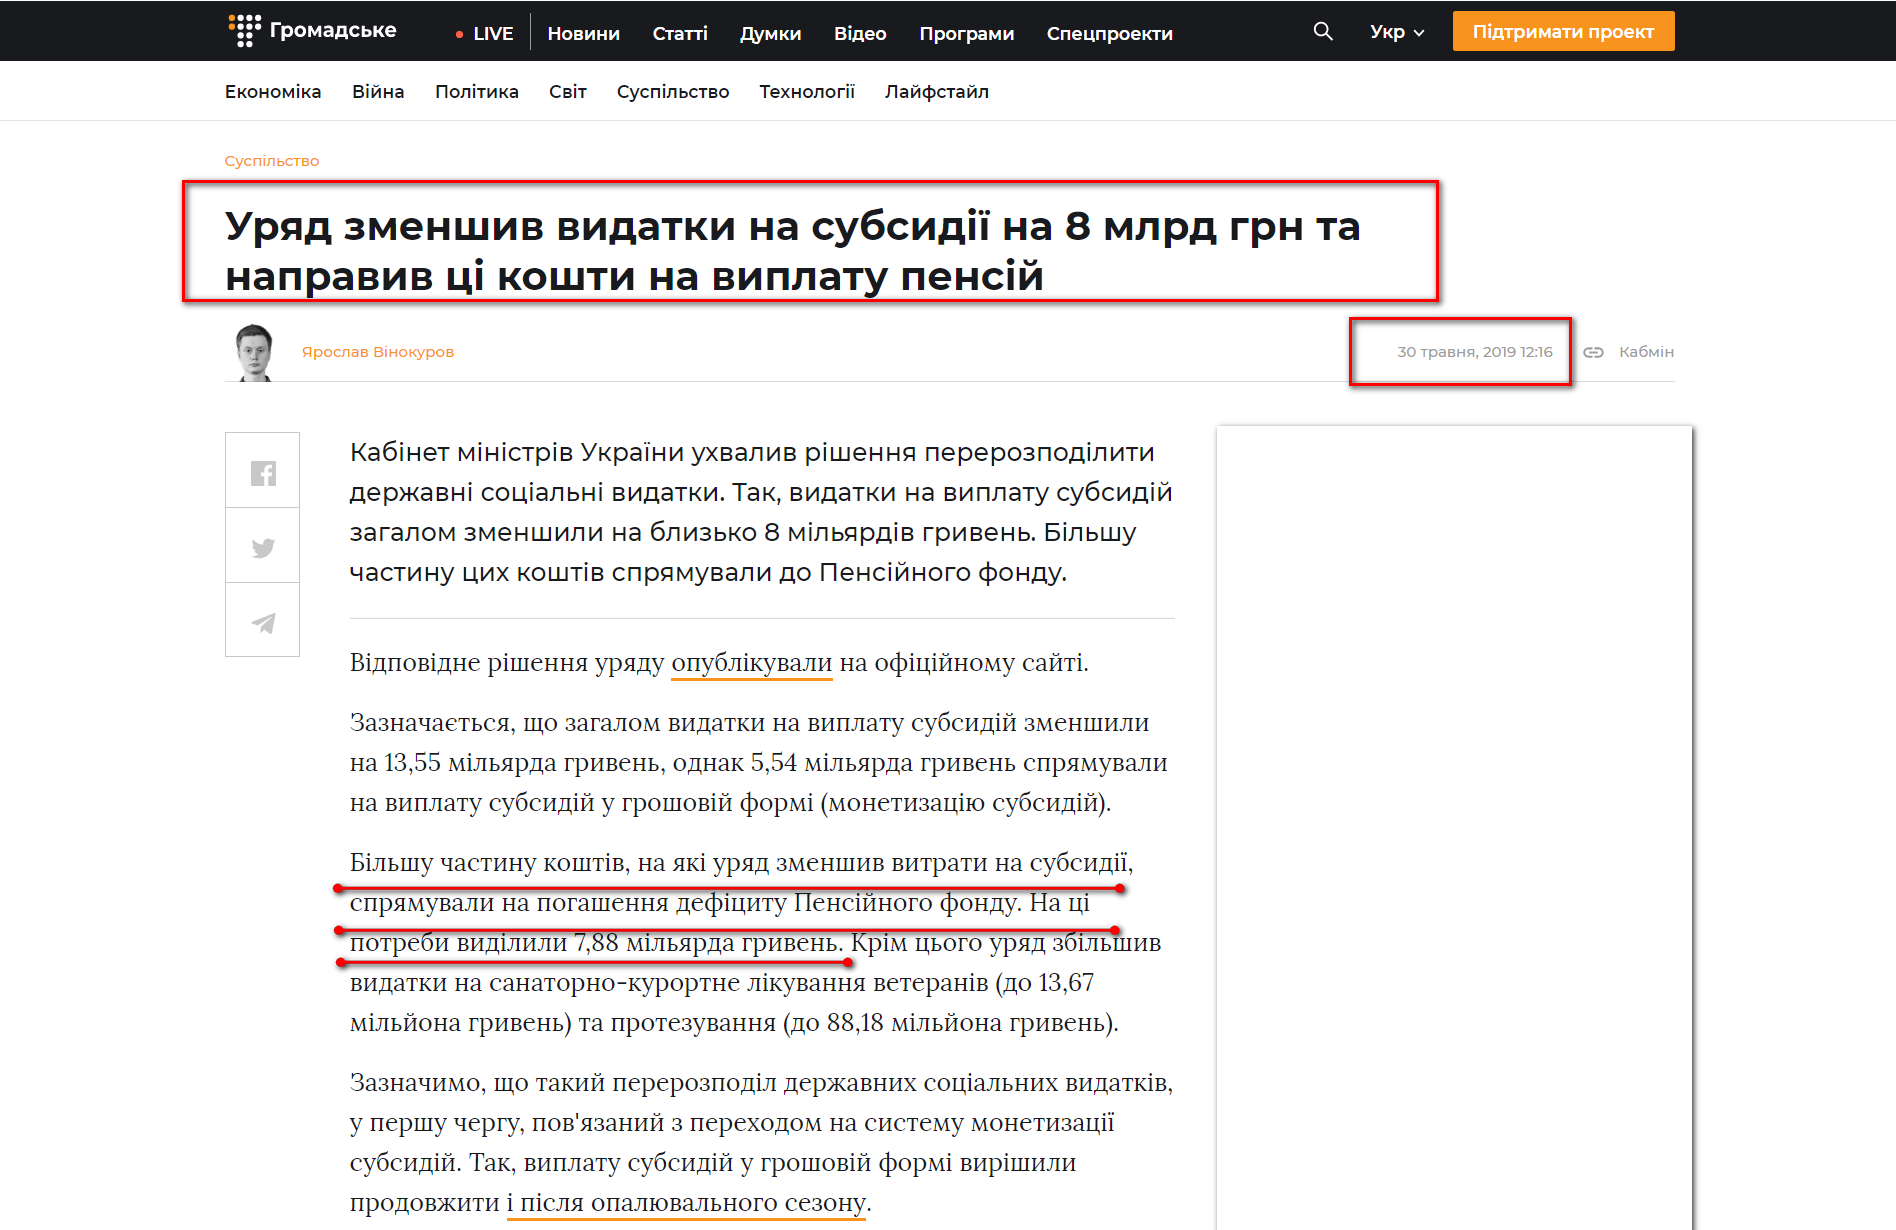 https://hromadske.ua/posts/uryad-zmenshiv-vidatki-na-subsidiyi-na-8-mlrd-grn-ta-napraviv-ci-koshti-na-viplatu-pensij